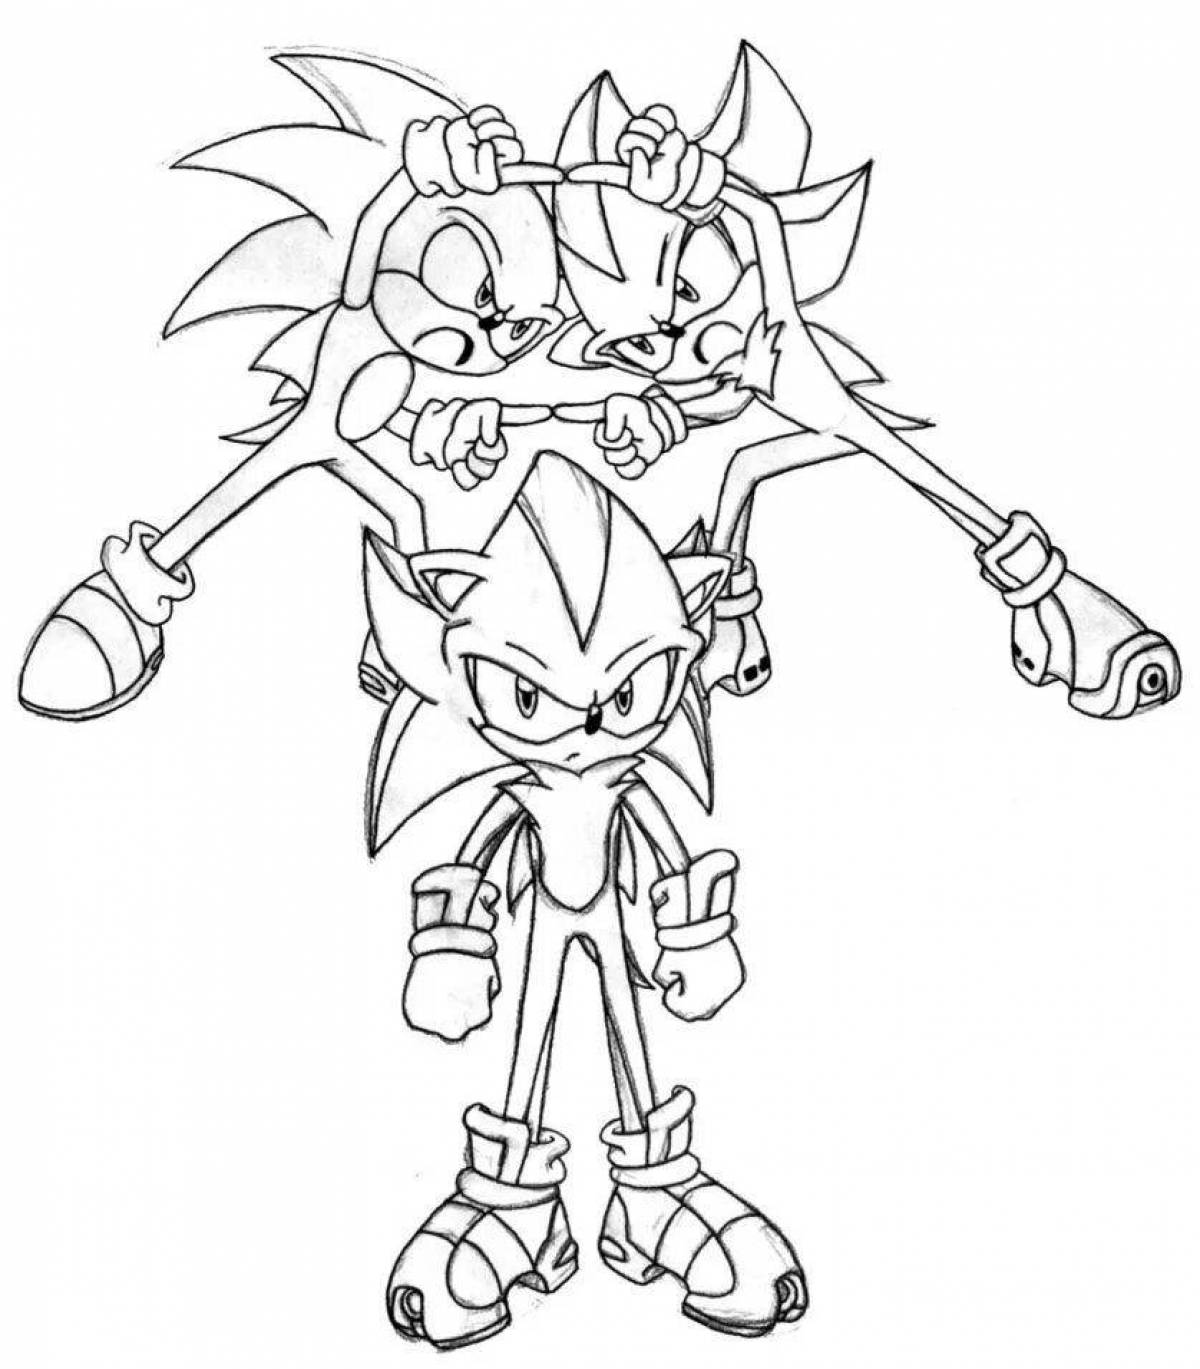 Sonic shader fun coloring